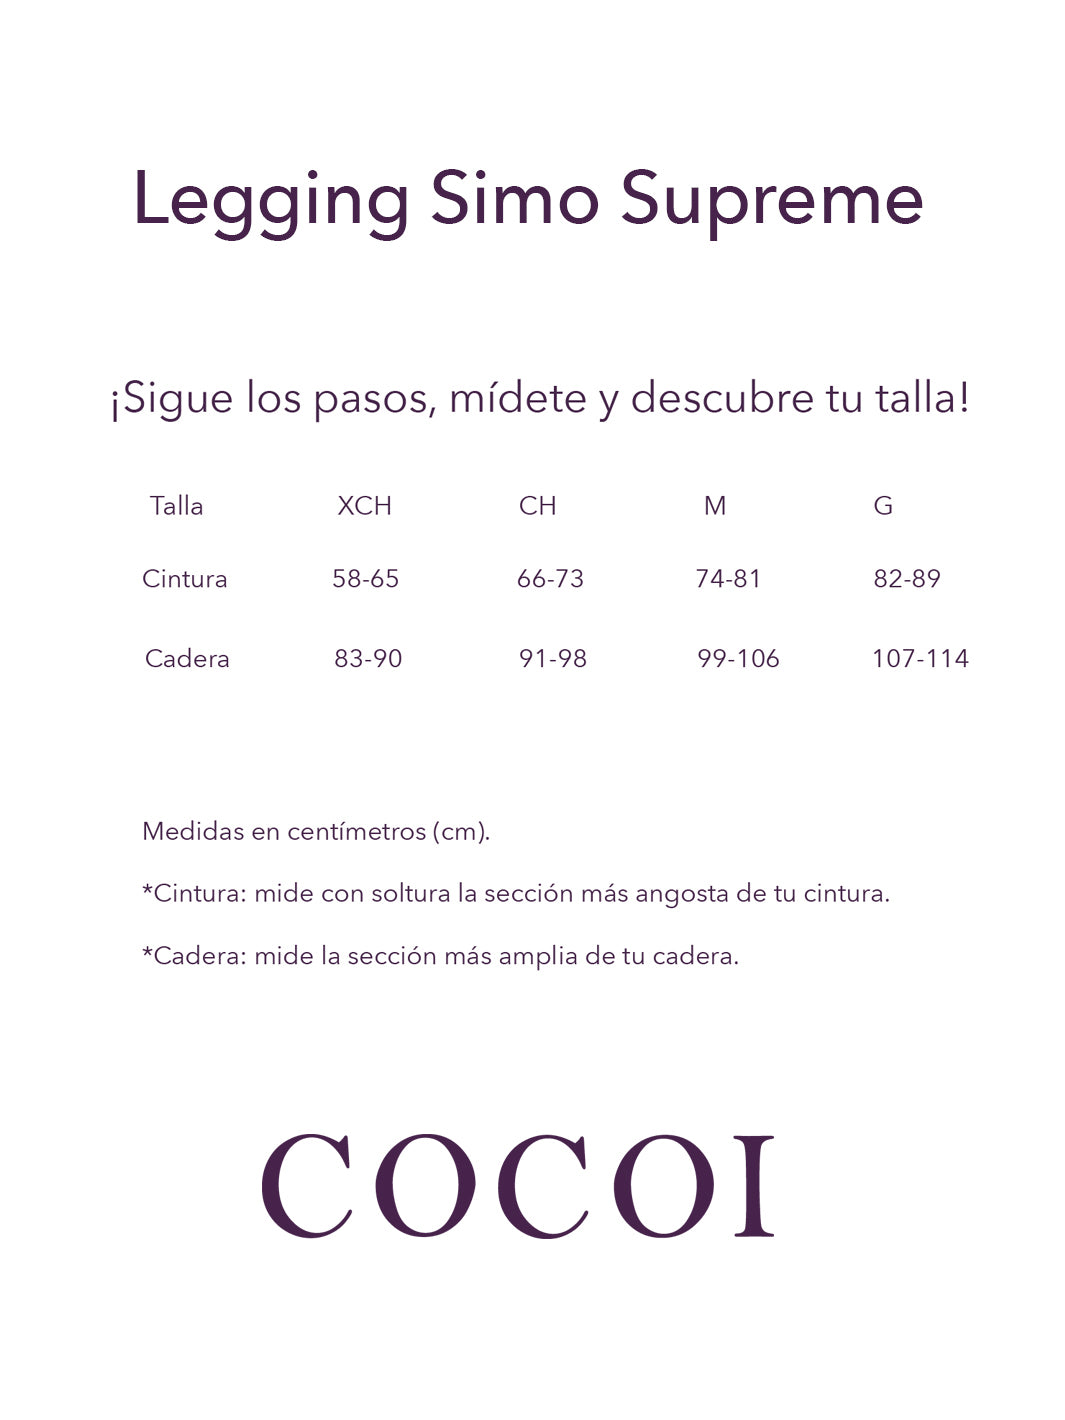 Legging Simo Supreme Wild Cocoi